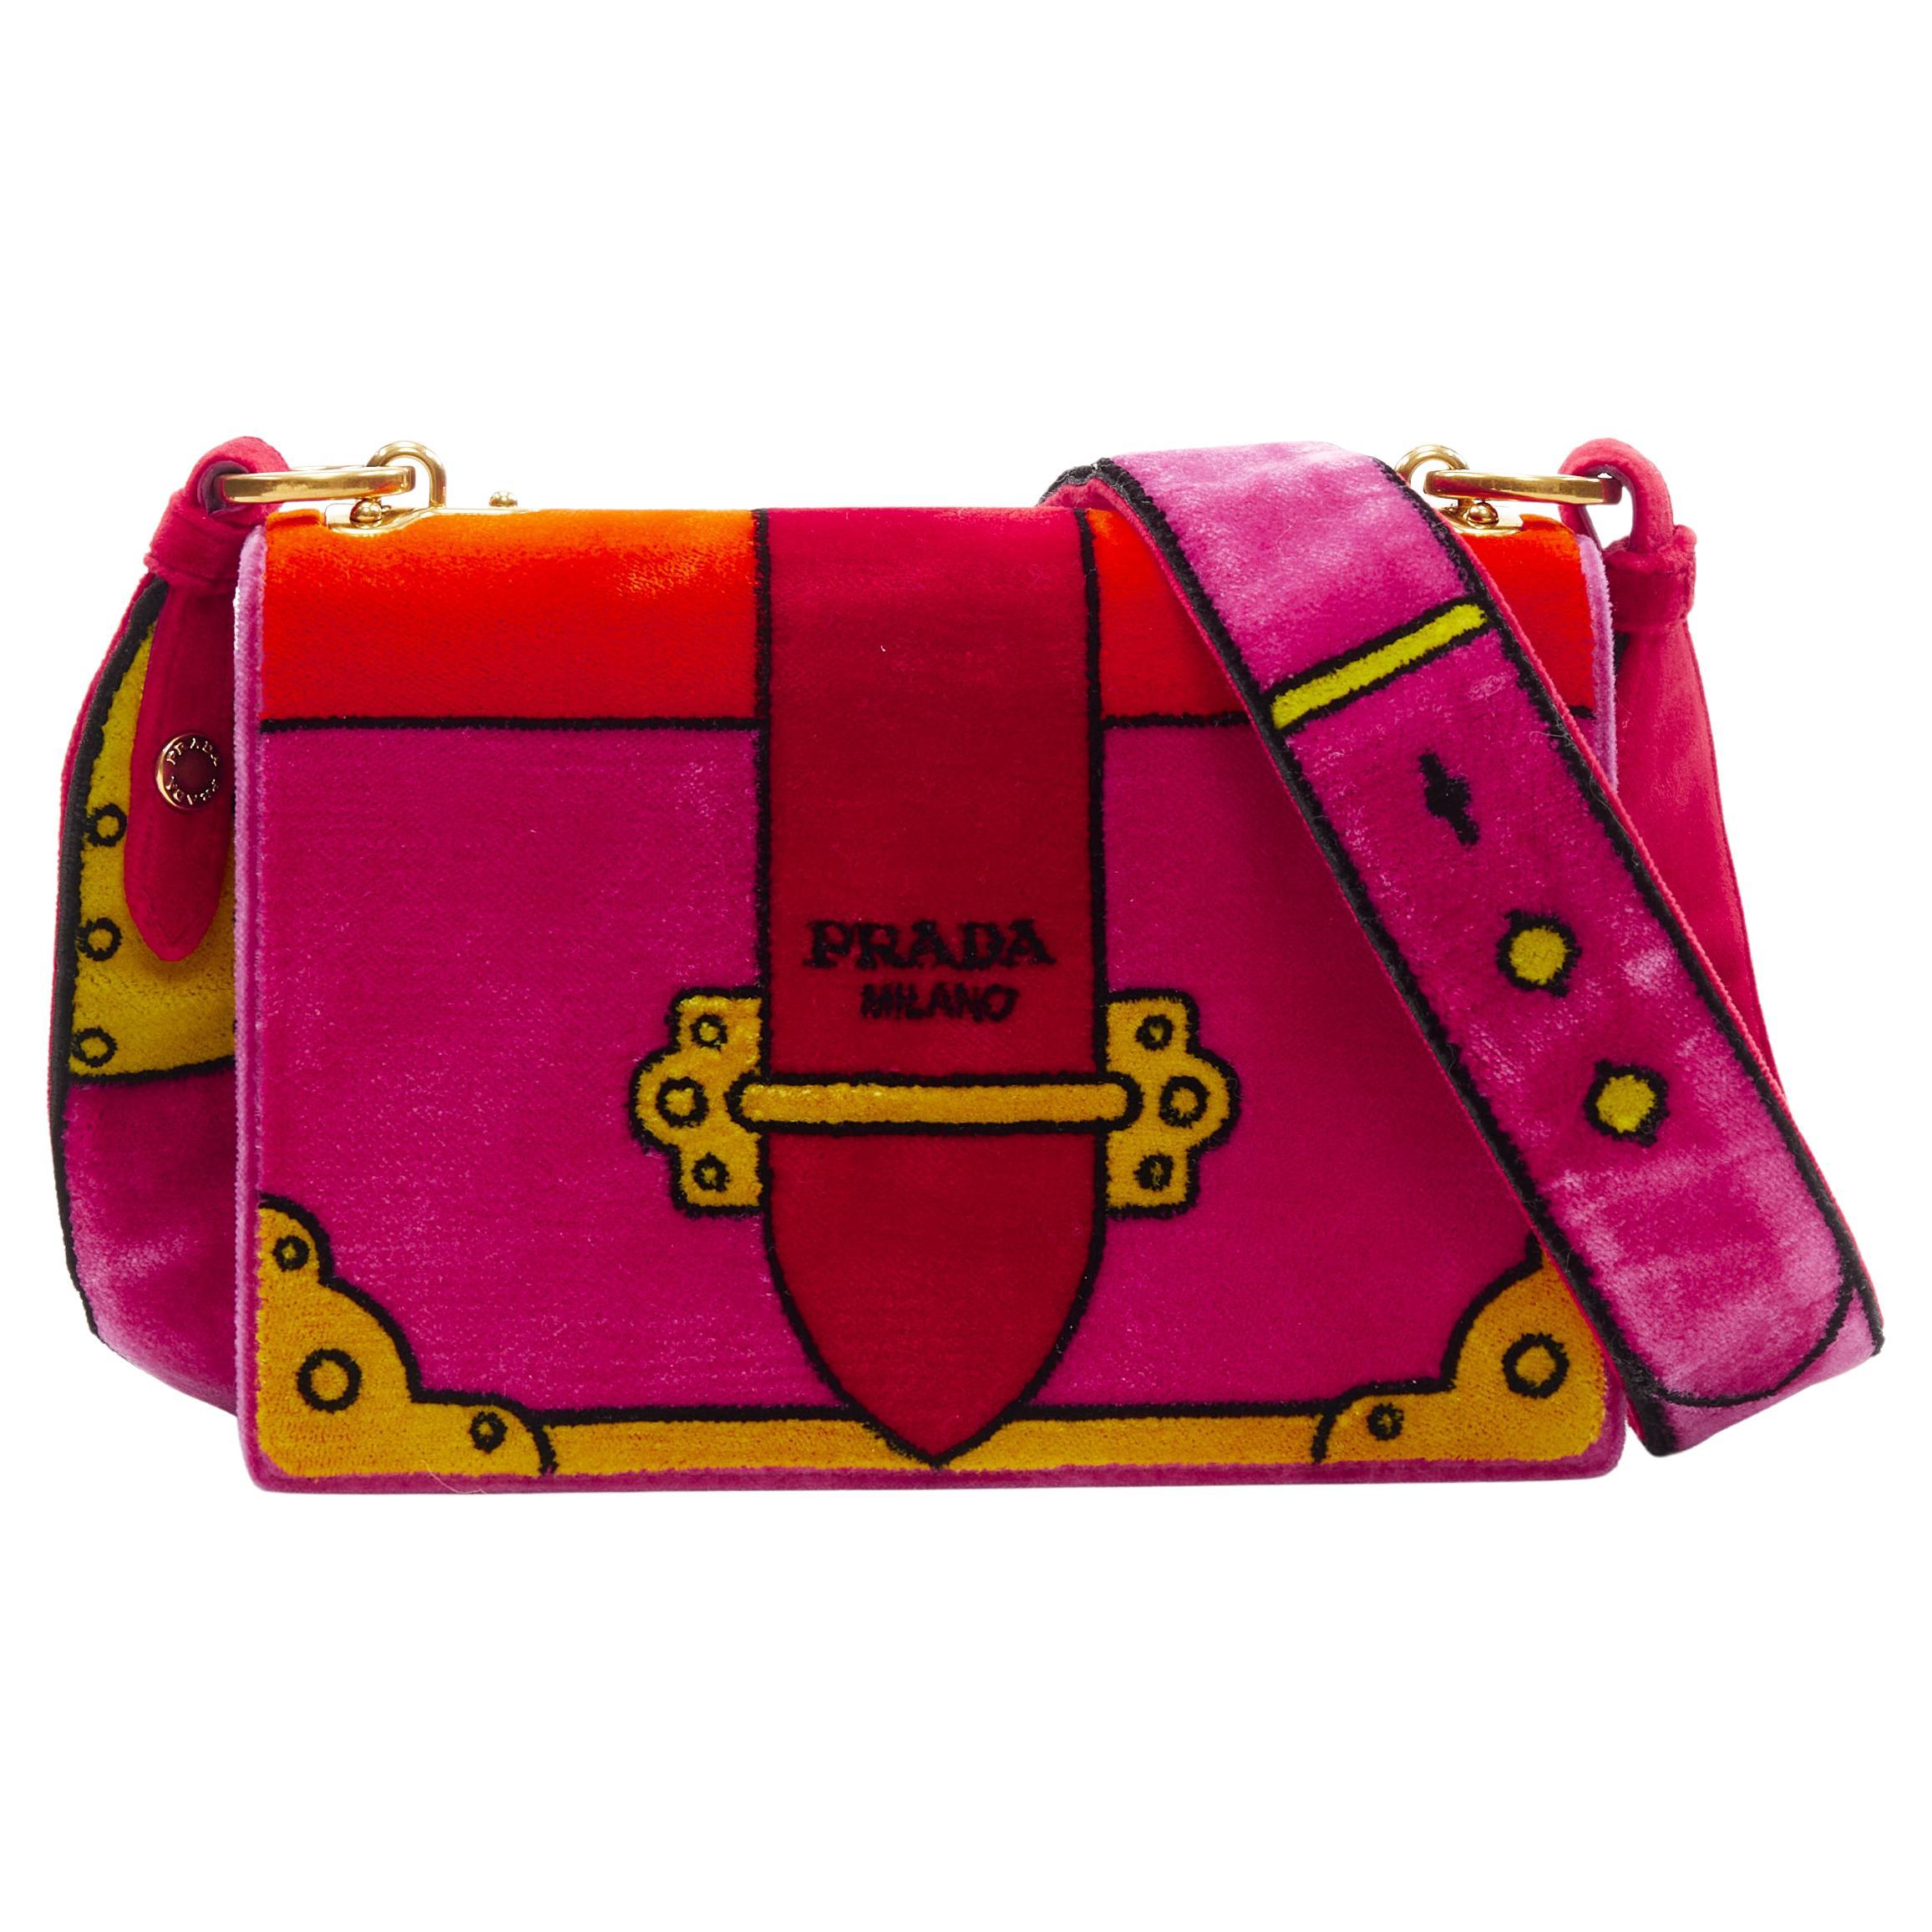 new PRADA Cahier Pop Tromp Loeil red pink velvet print crossbody shoulder bag